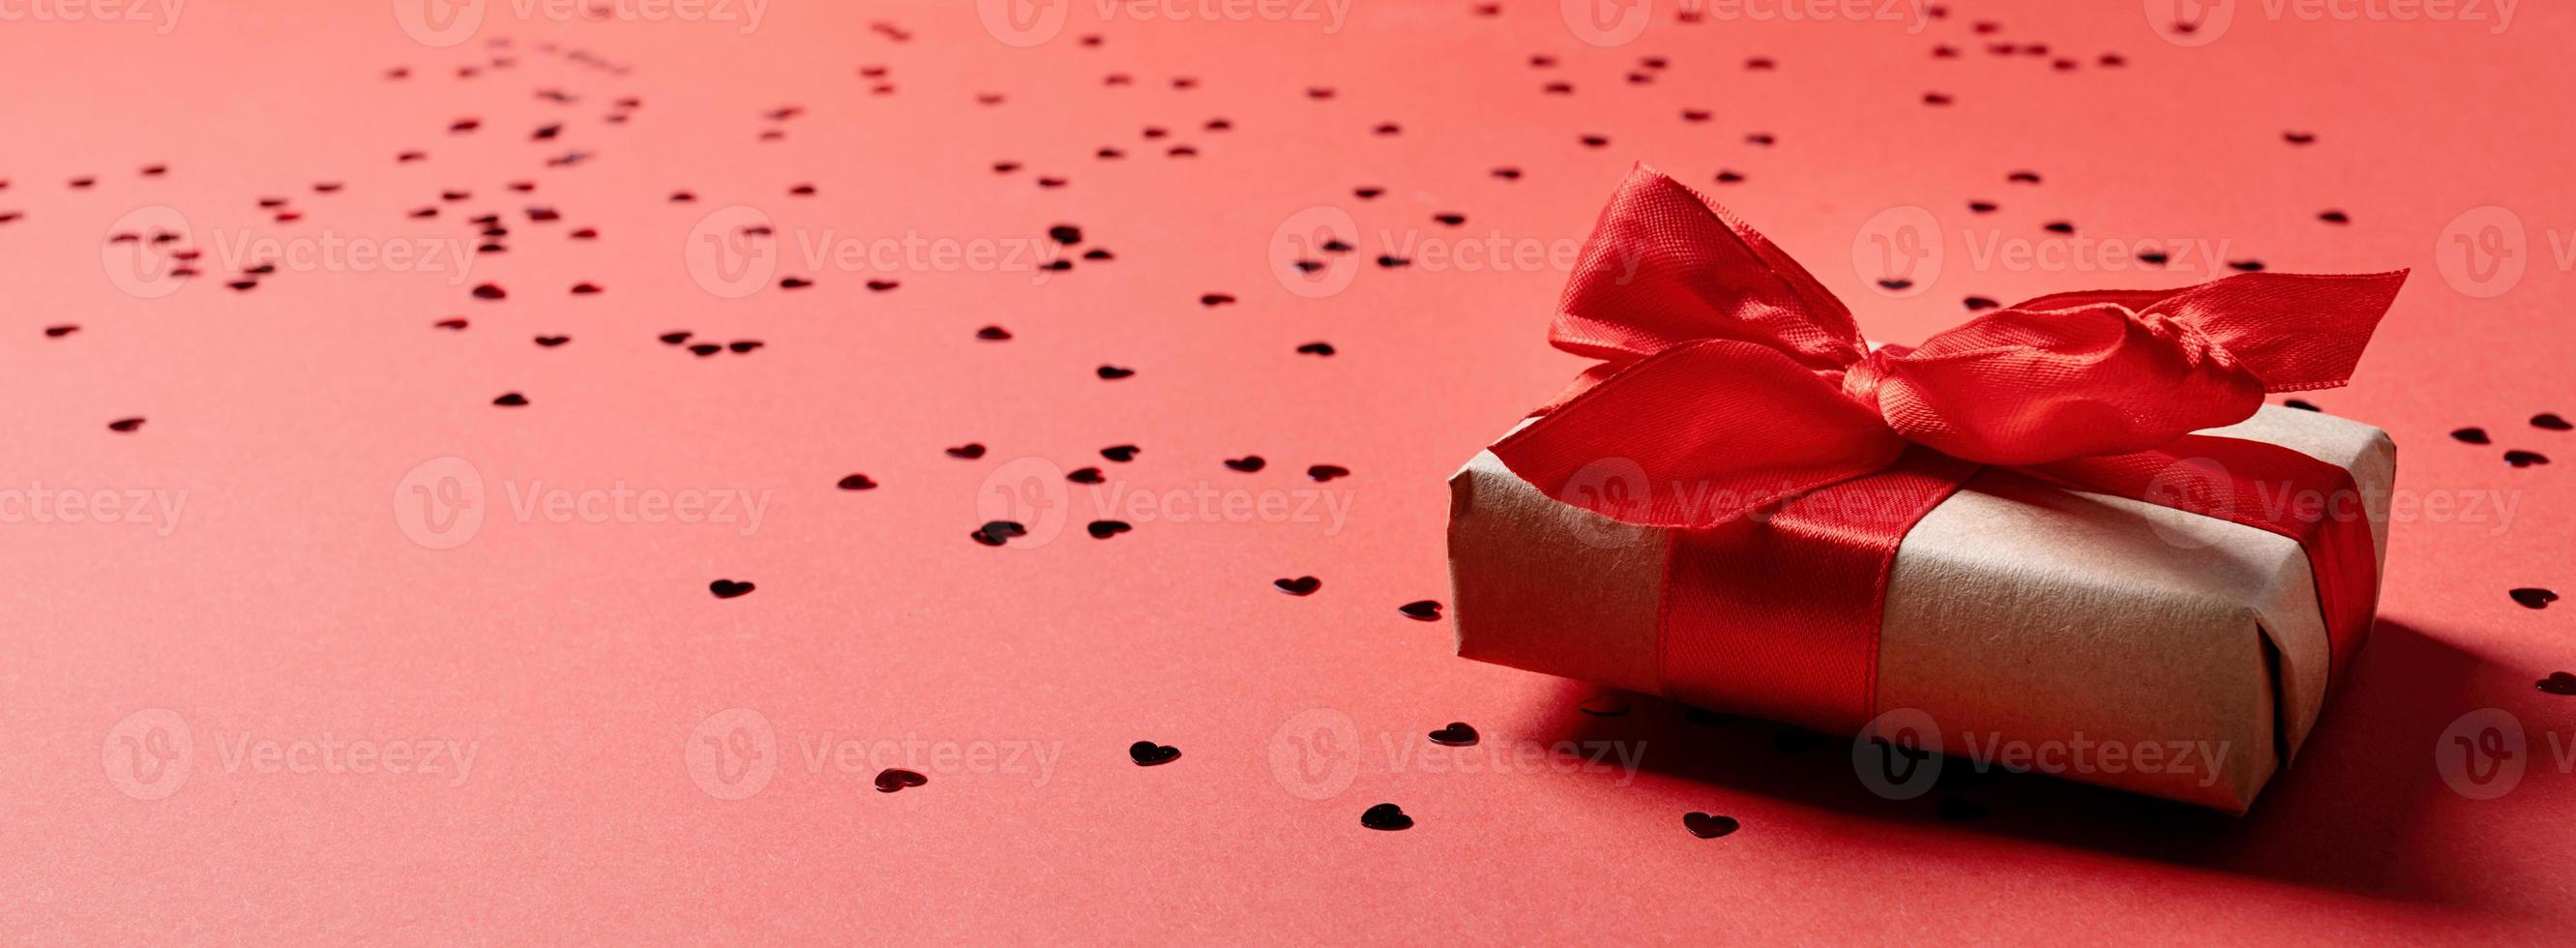 caixa de presente vermelha com uma fita para o dia dos namorados comemorando em fundo sólido vermelho com espaço de cópia foto